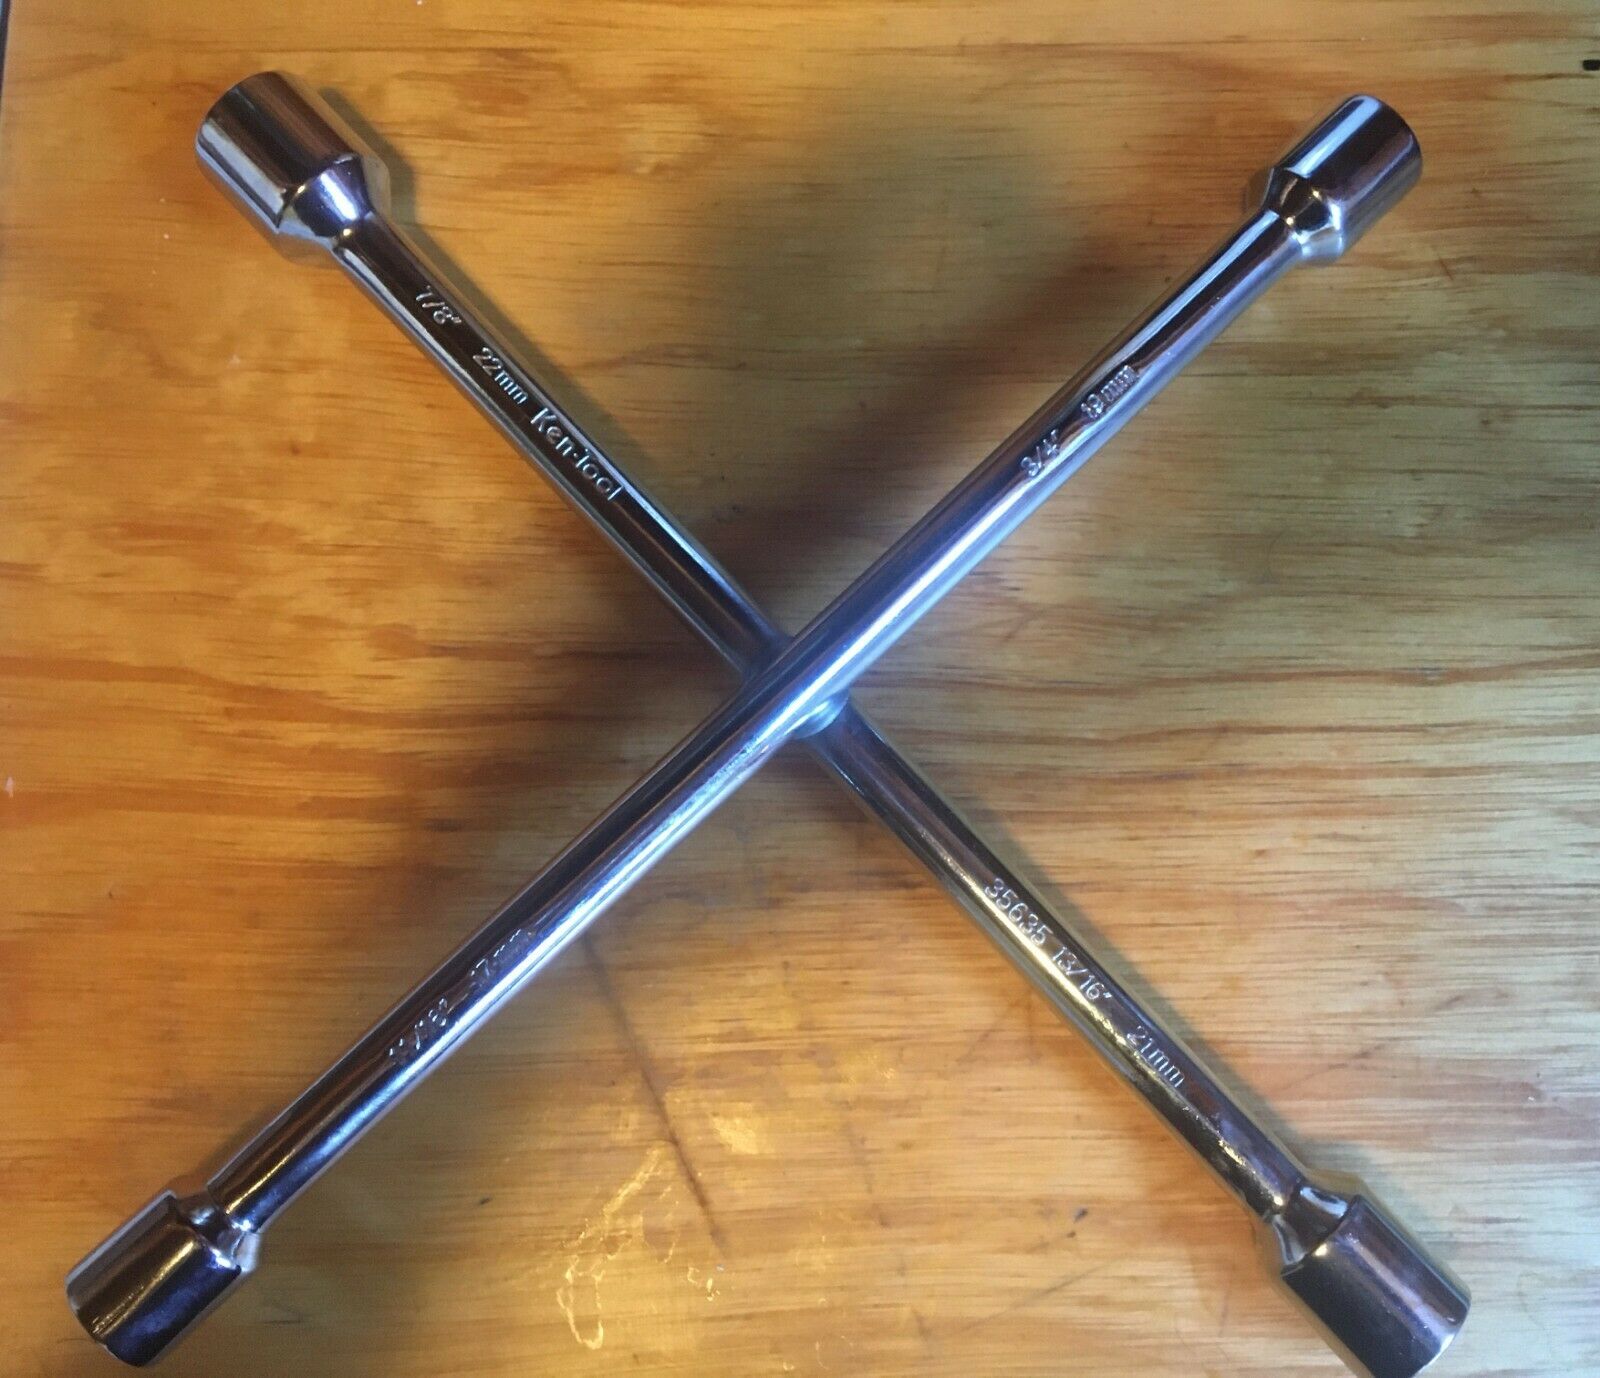 Ken-tool 35635 4-way Chrome Lug Wrench